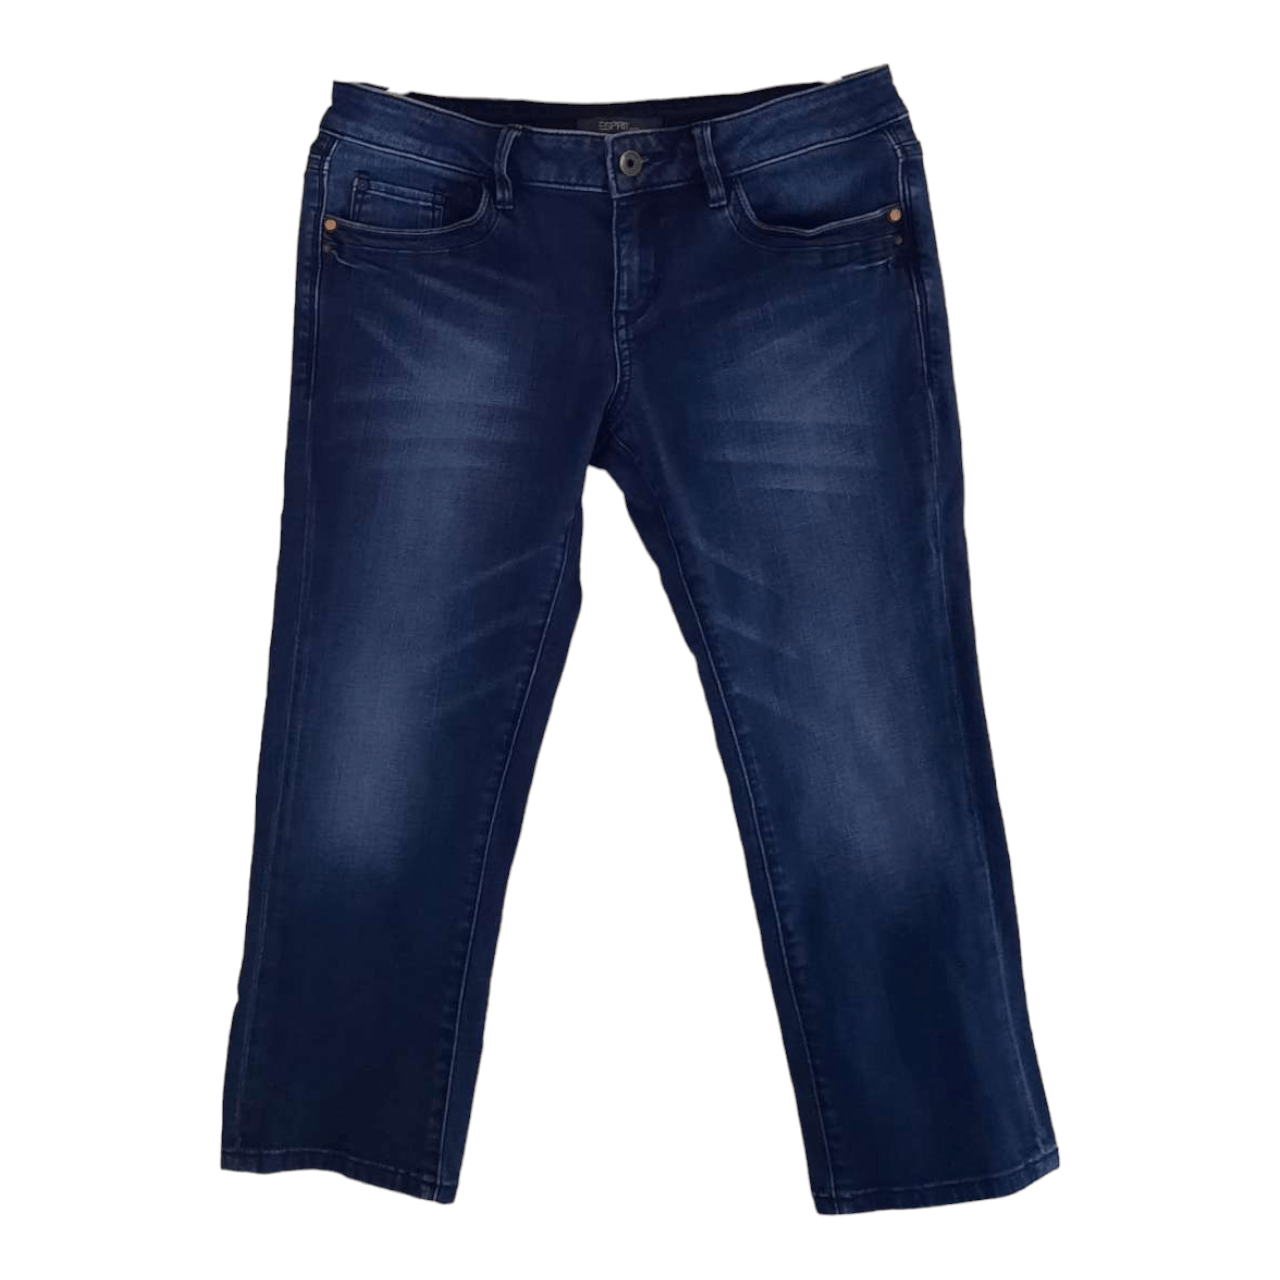 Esprit Dark Blue Low Waist Jeans Long Pants